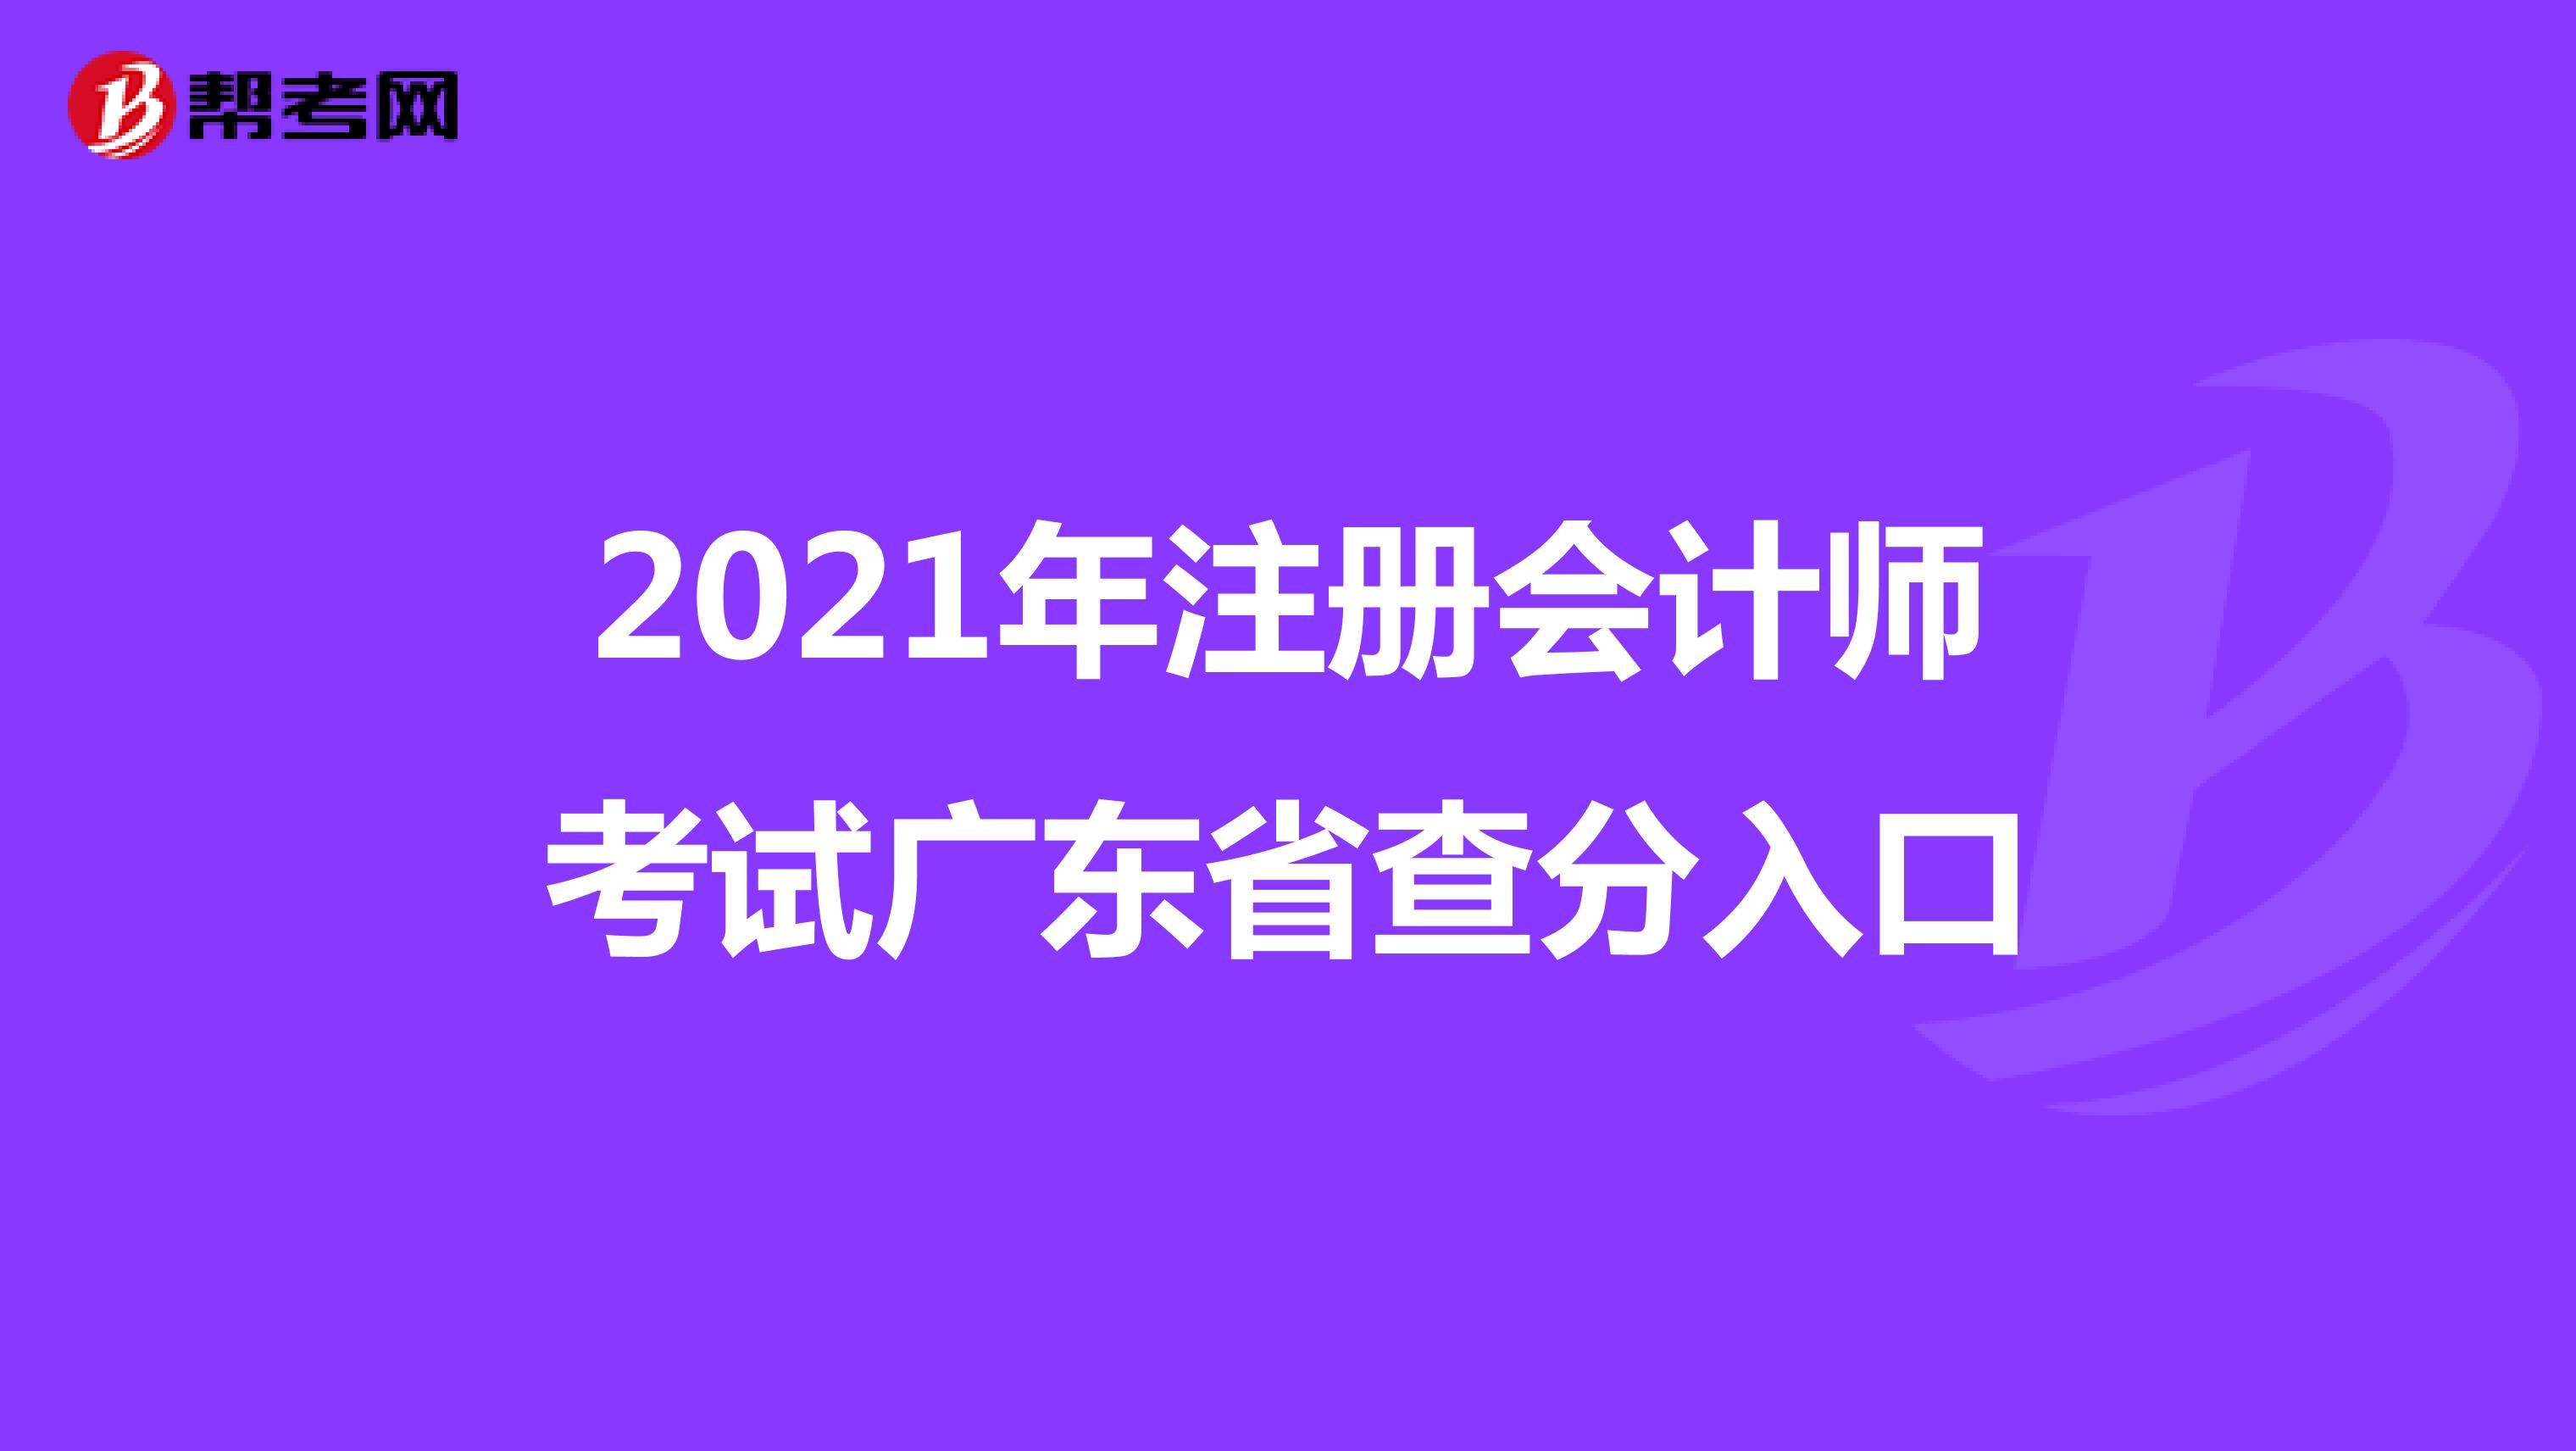 2021年注册会计师考试广东省查分入口